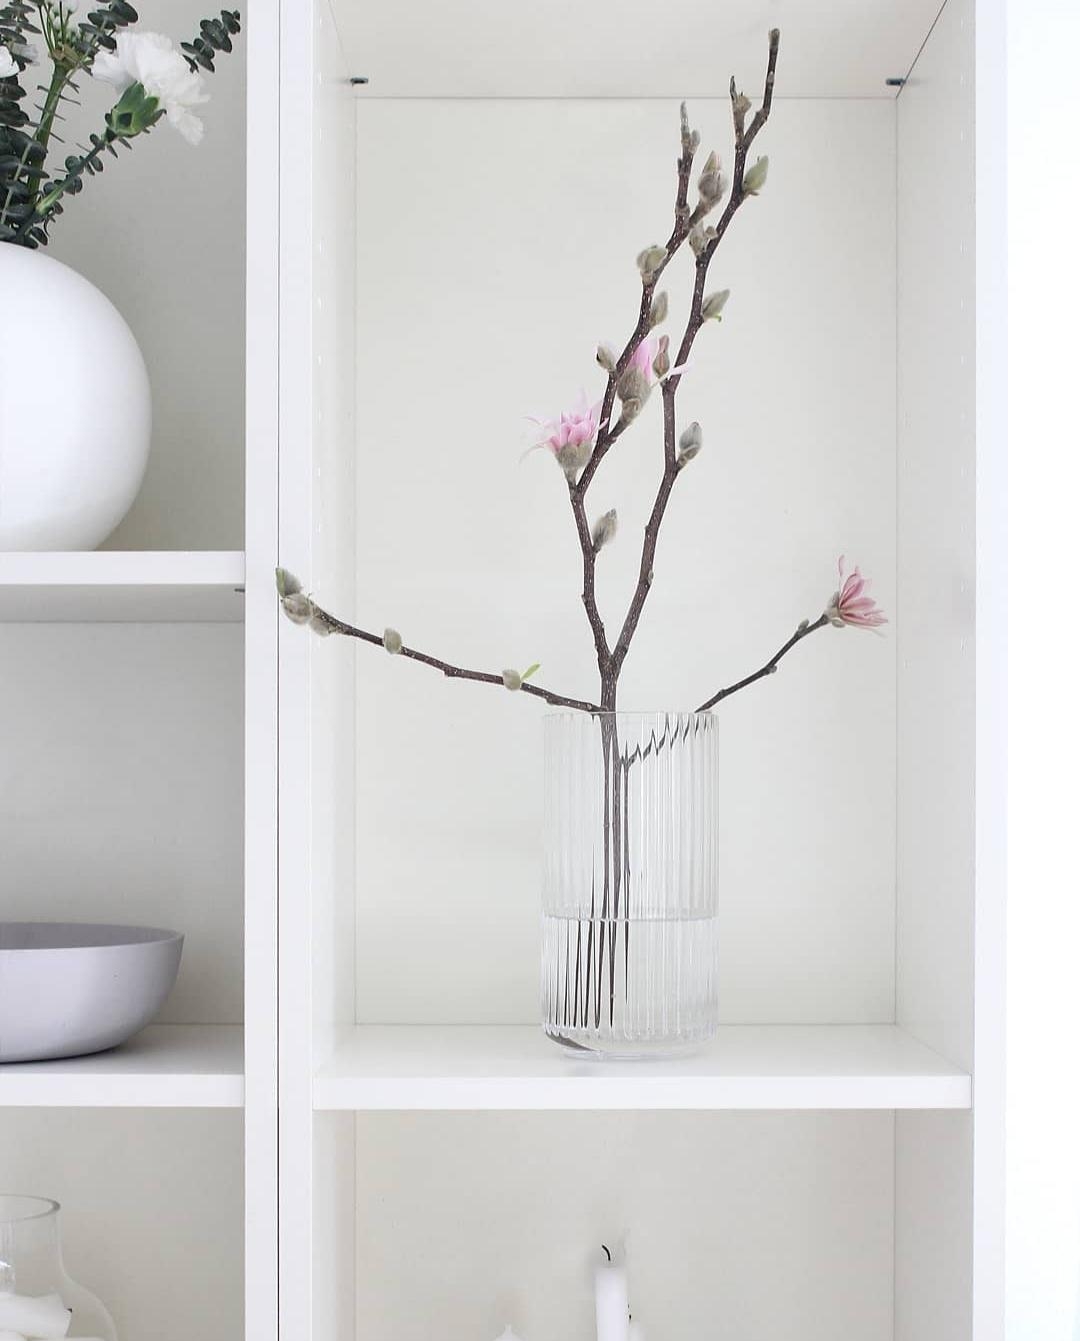 Magnolienliebe! So zarte Blüten und wunderschöne Farben,  Blumen bringen Farbe in jede Wohnung 😍👌
#minimalism #flower 